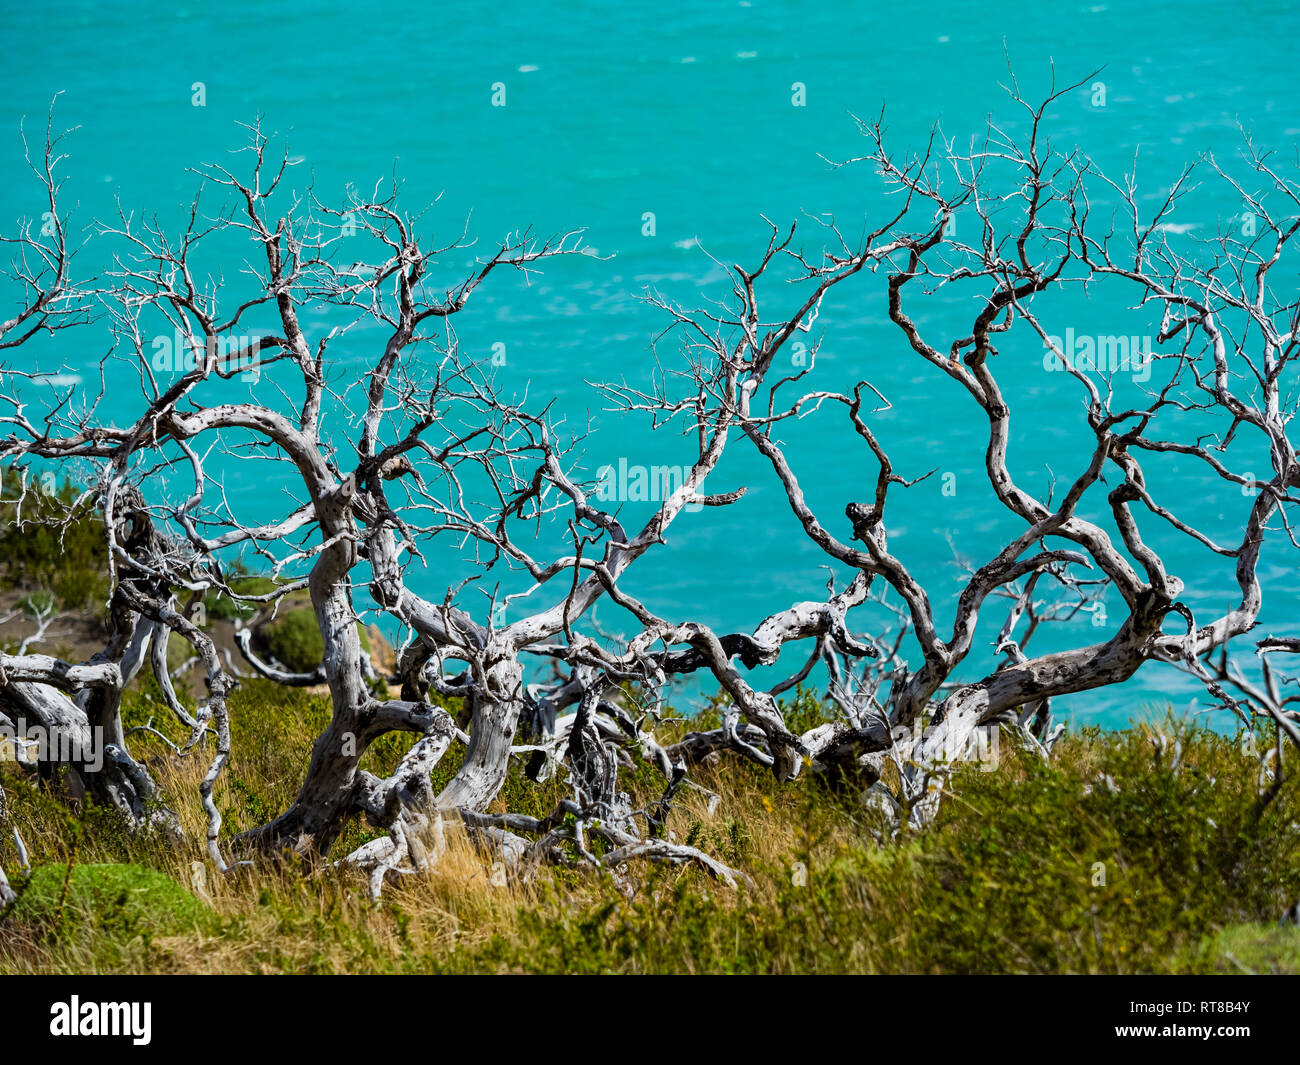 Chile, Patagonien, Torres del Paine Nationalpark, Lago Nordenskjold und tote Bäume im Vordergrund. Stockfoto